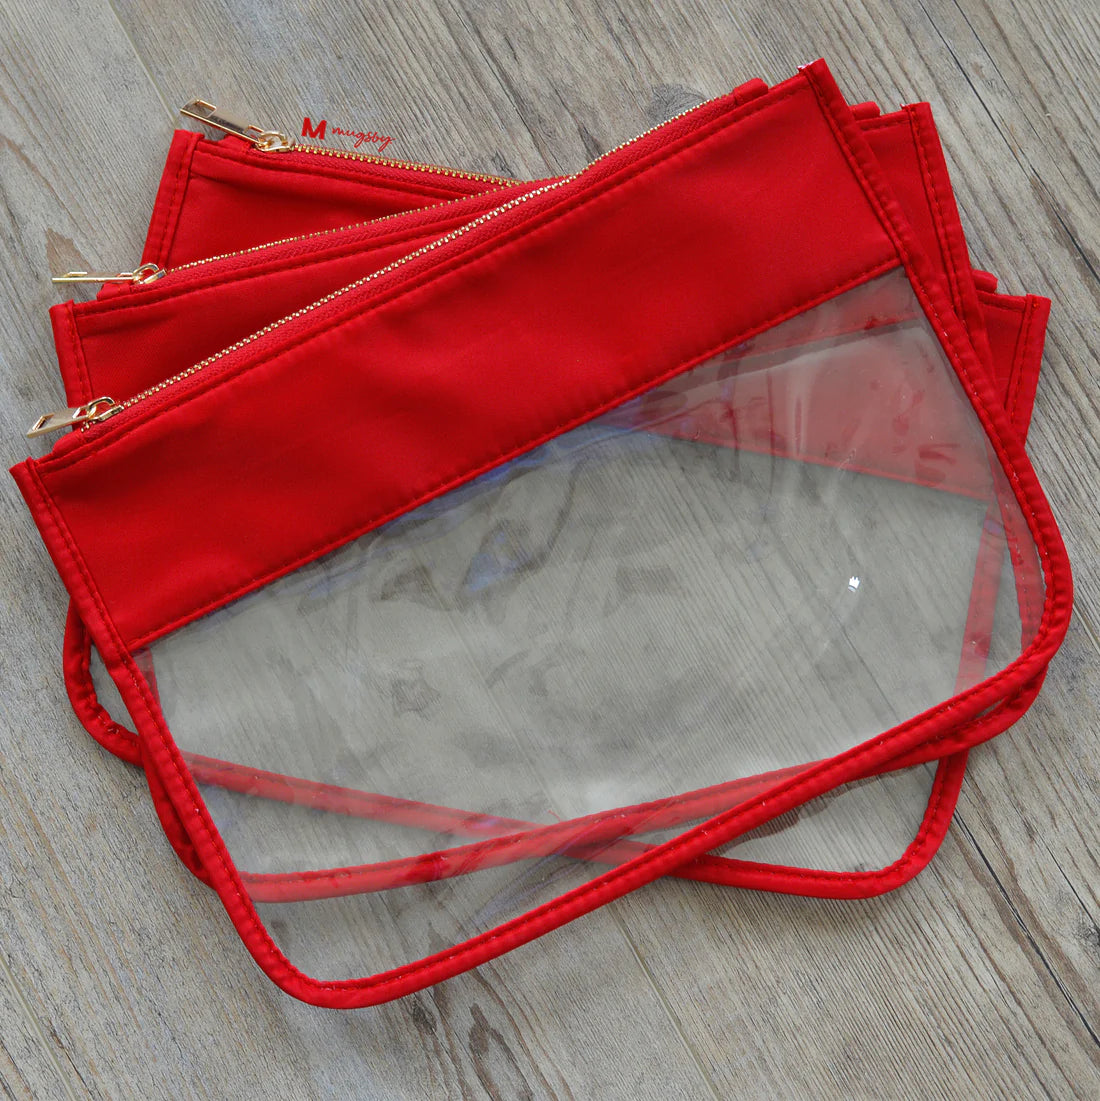 Ravishing Red Clear Bag